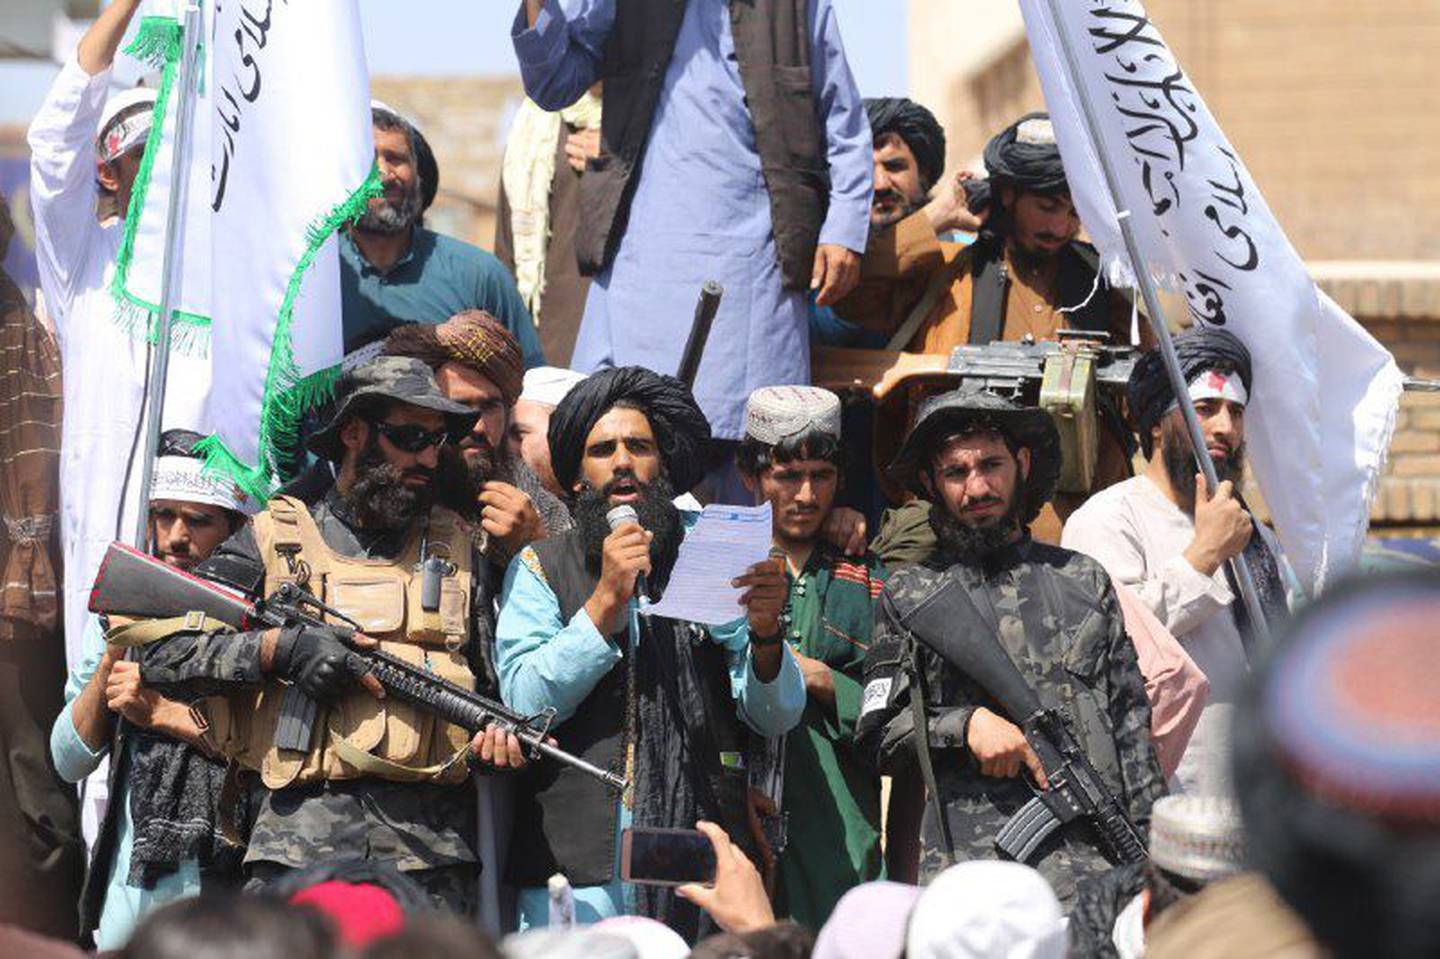 Los miembros del Talibán reunidos frente a la gobernación de Herat después de la finalización de la retirada de Estados Unidos de Afganistán.dfd